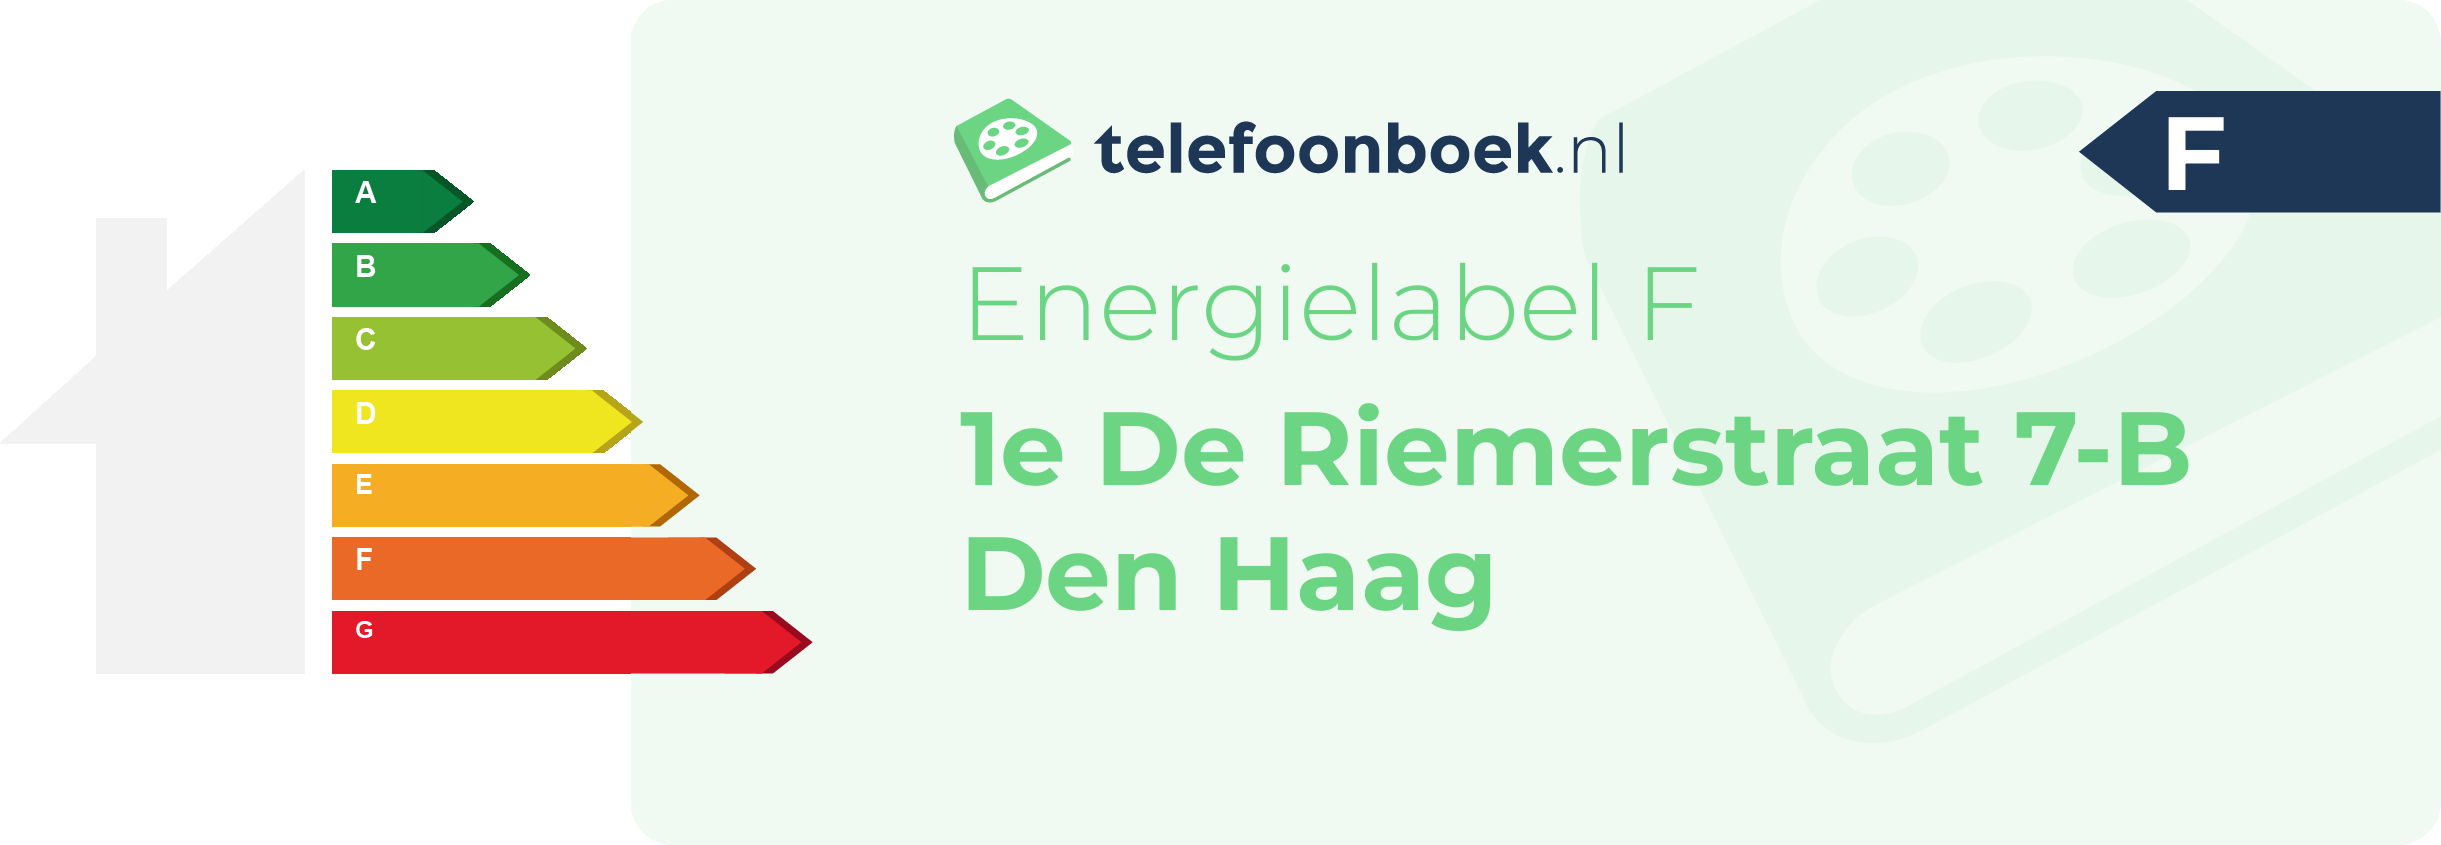 Energielabel 1e De Riemerstraat 7-B Den Haag